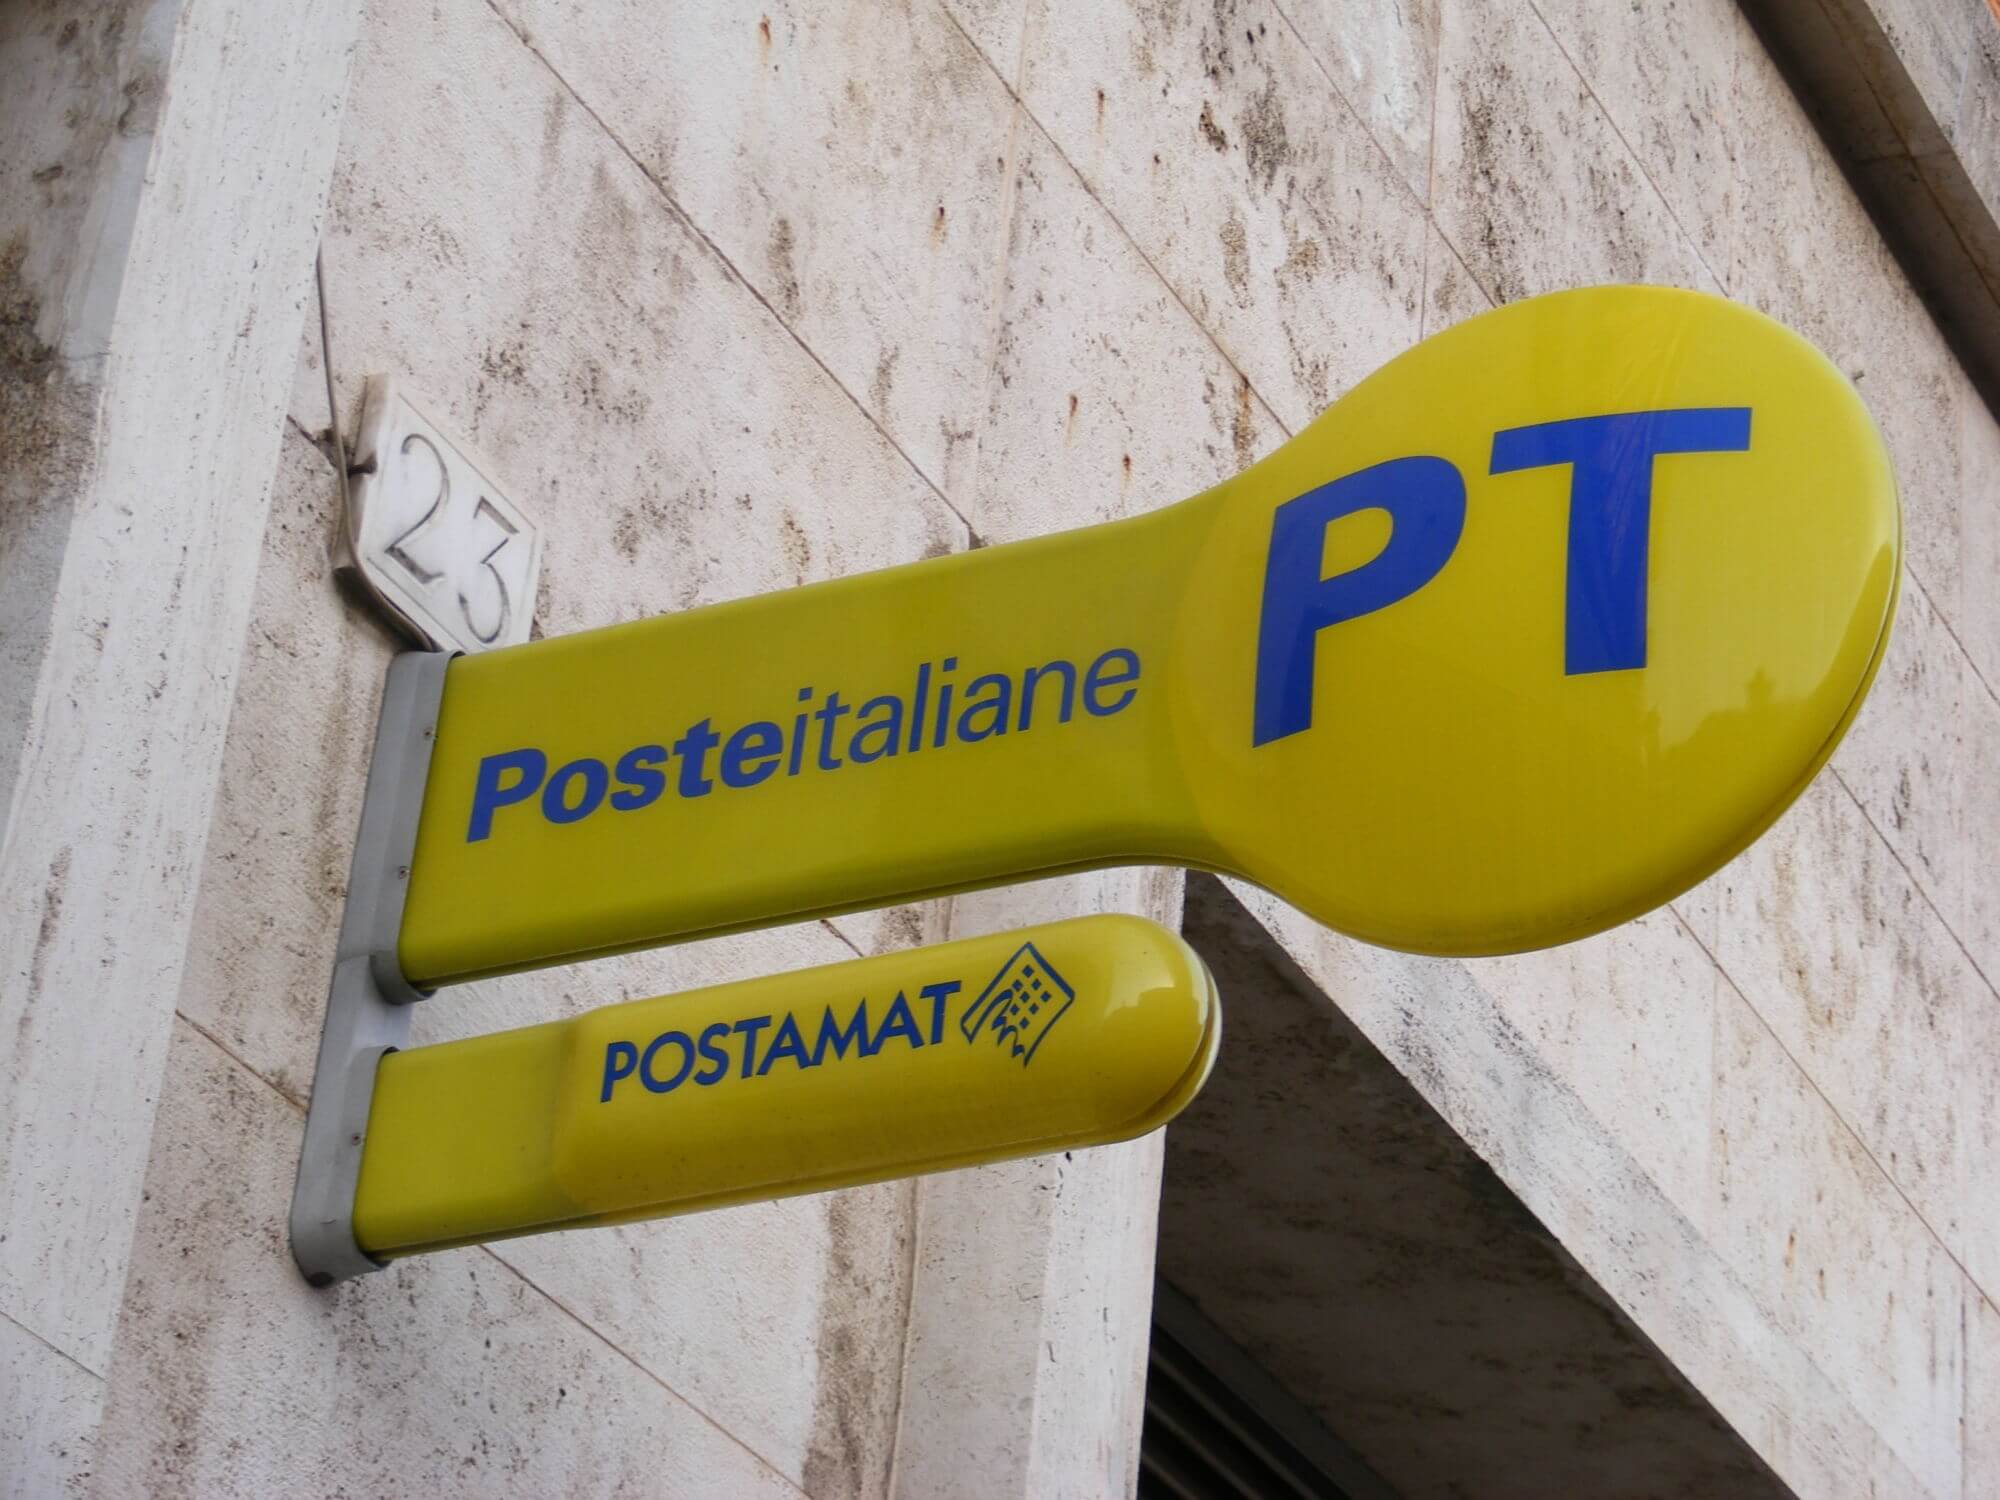 Caos ufficio postale a San Miniato, il sindaco scrive a Poste Italiane